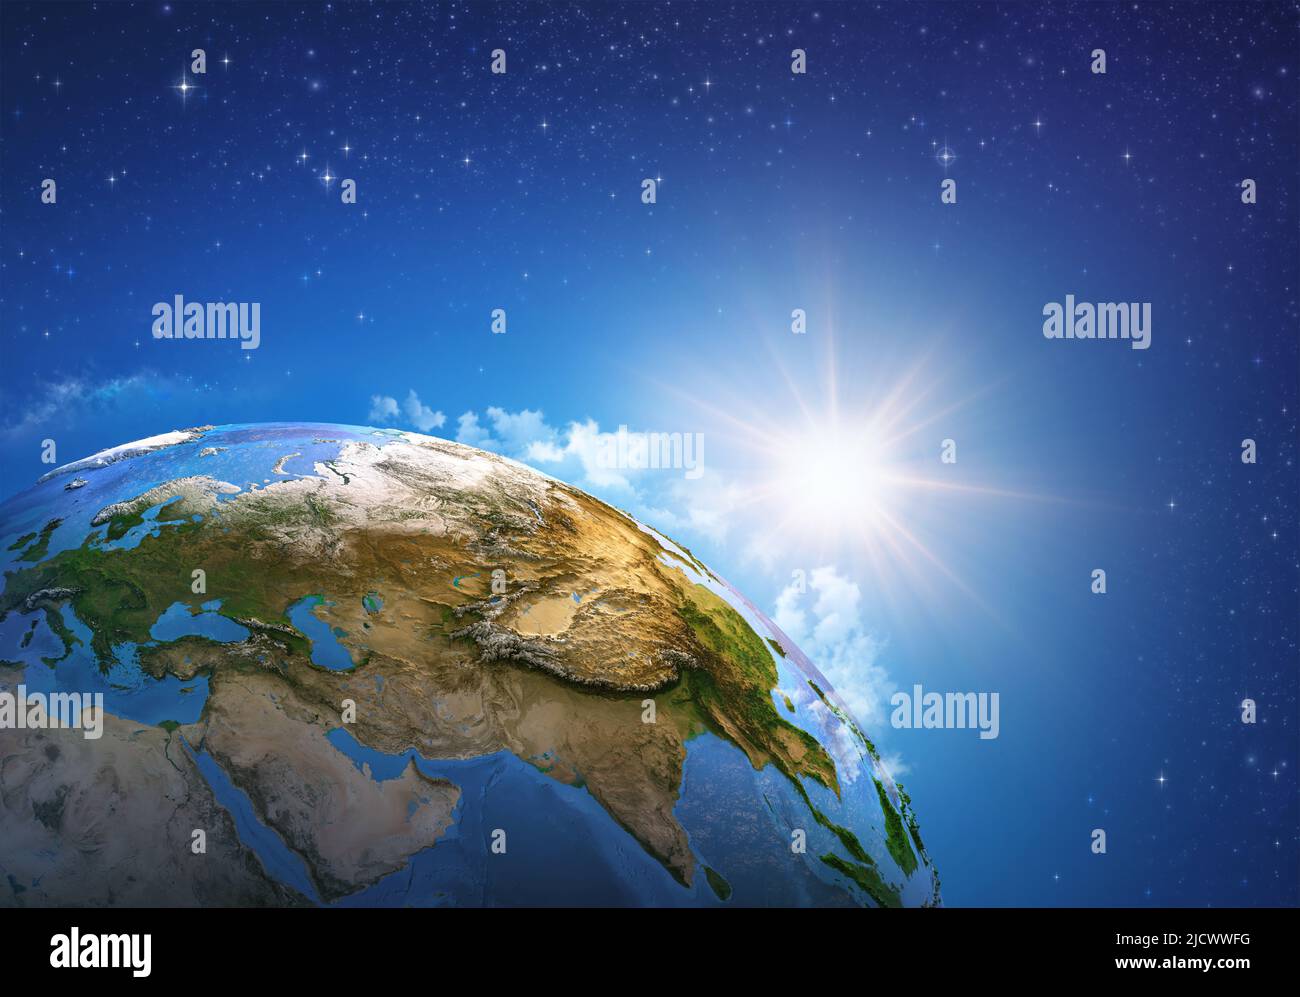 Il riscaldamento globale sul pianeta Terra, visto dallo spazio focalizzato su Asia orientale, Cina, Russia. Globo terrestre nello spazio profondo, sole che sorge all'orizzonte. Foto Stock